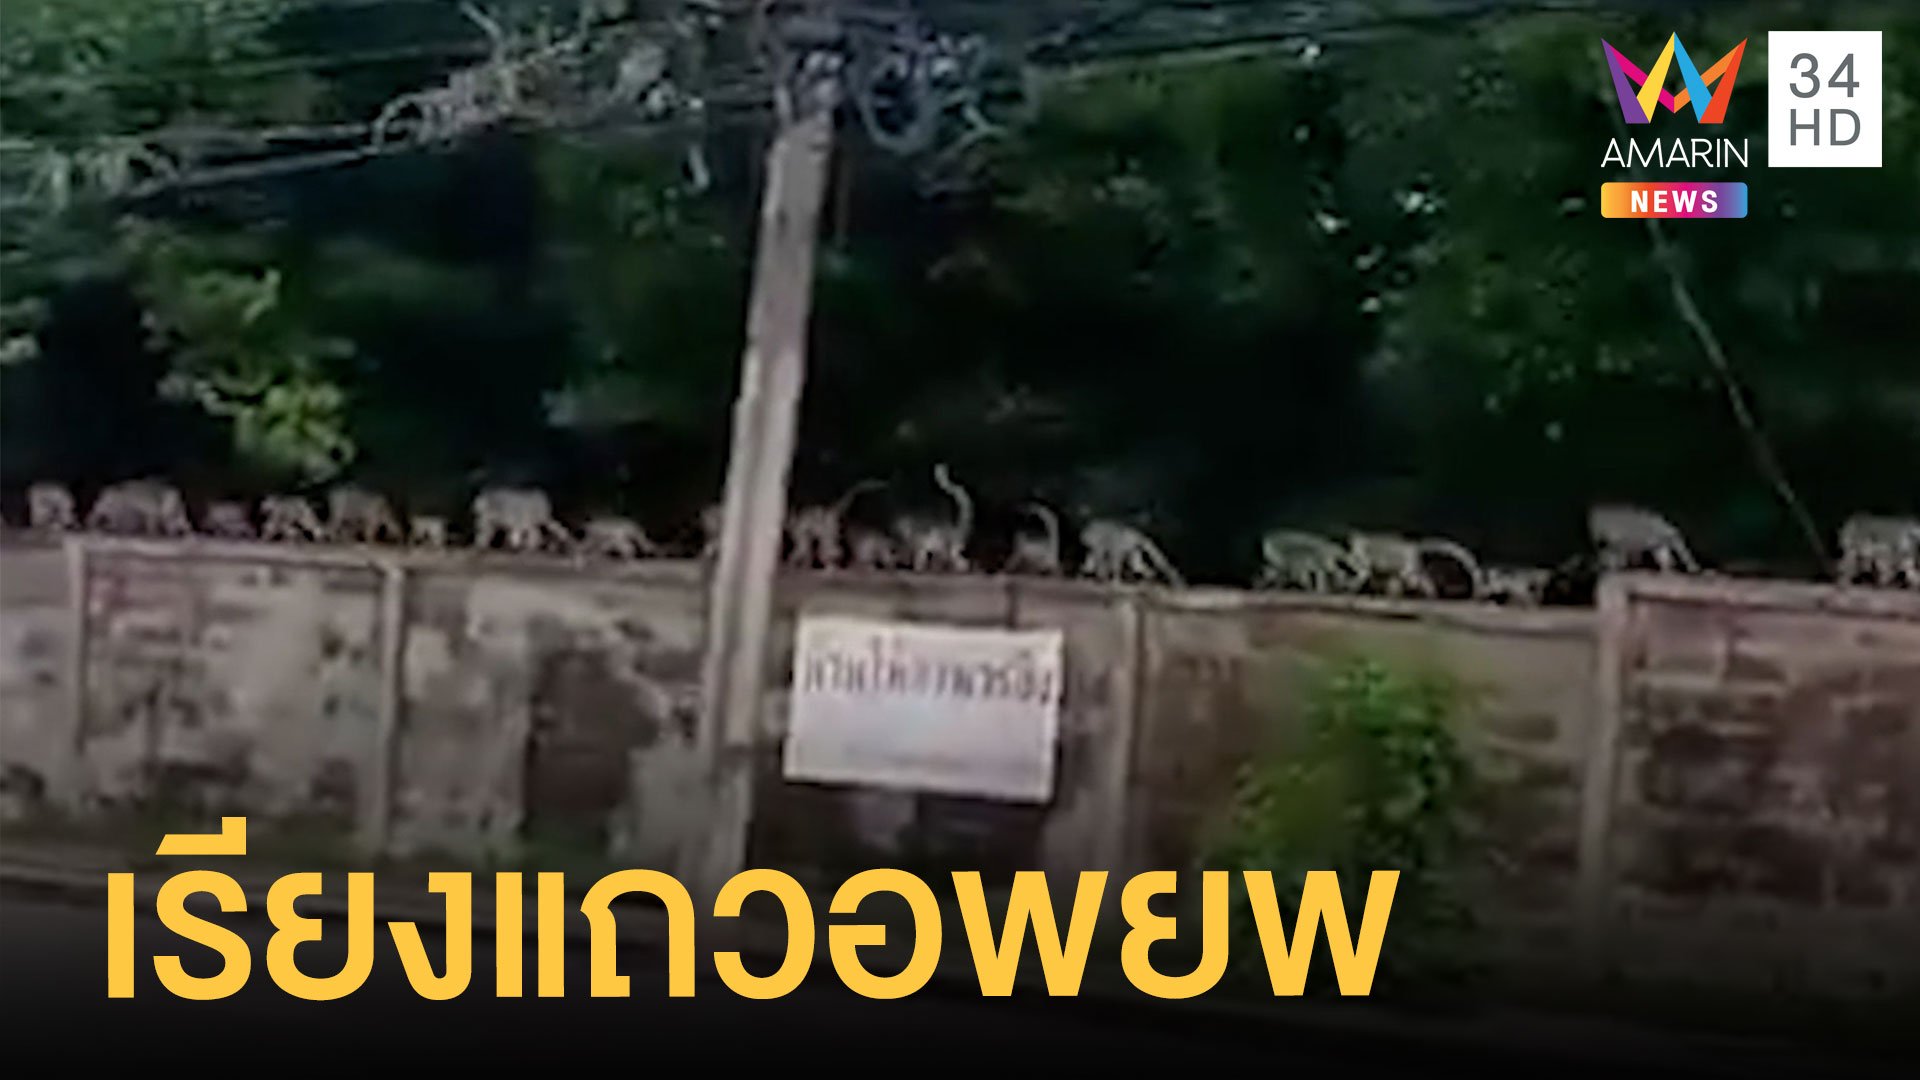 ฝูงลิงมีระเบียบ เดินเรียงแถวอพยพเข้าเมืองหัวหิน | ข่าวอรุณอมรินทร์ สุดสัปดาห์ | 26 มิ.ย. 64 | AMARIN TVHD34